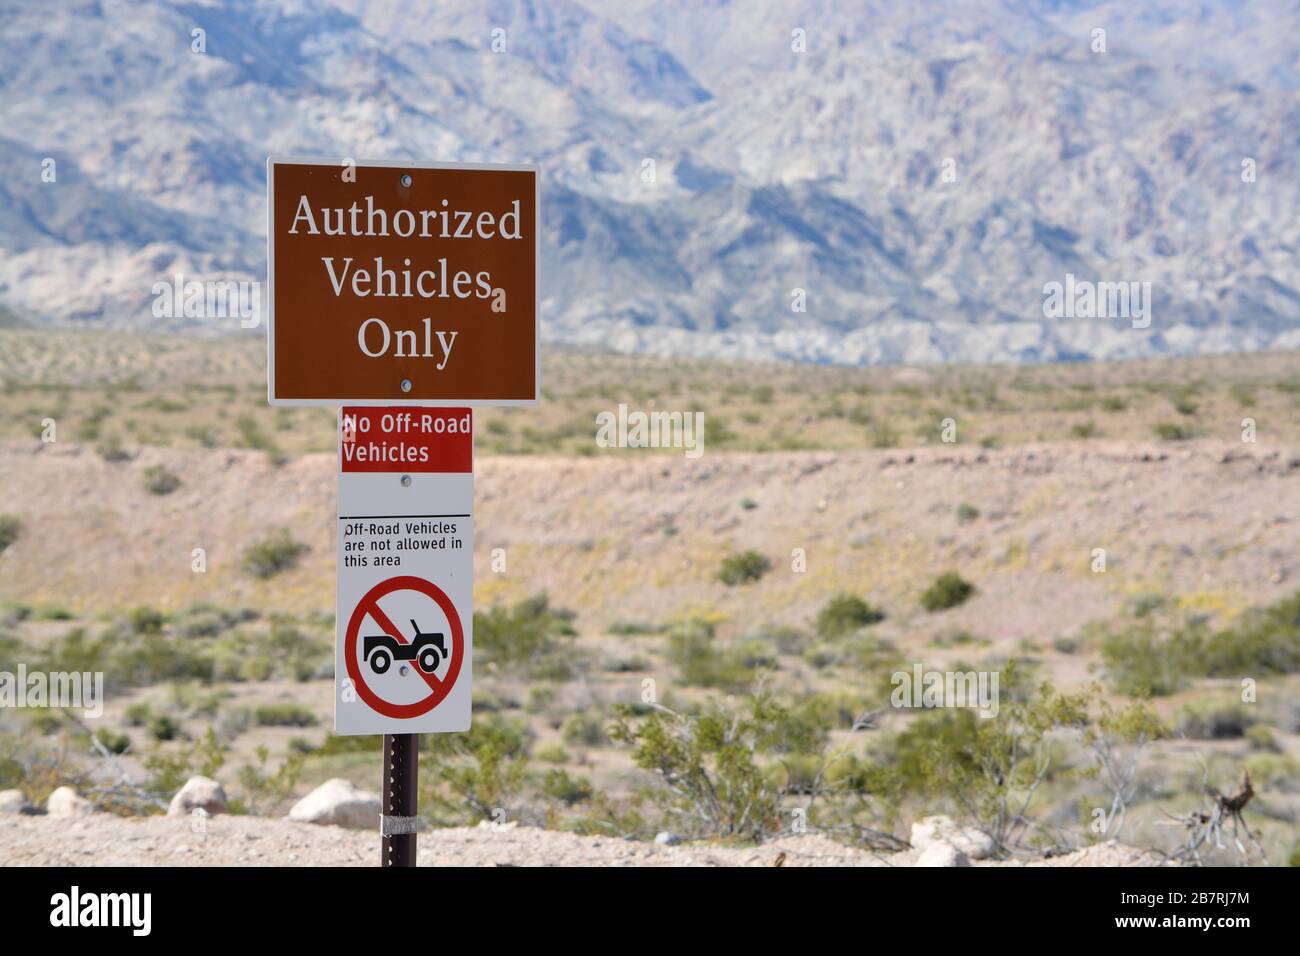 Solo veicoli autorizzati, No Off veicoli stradali permesso Accedi Lake Mead National Recreation Area, Mohave County, Arizona Stati Uniti Foto Stock